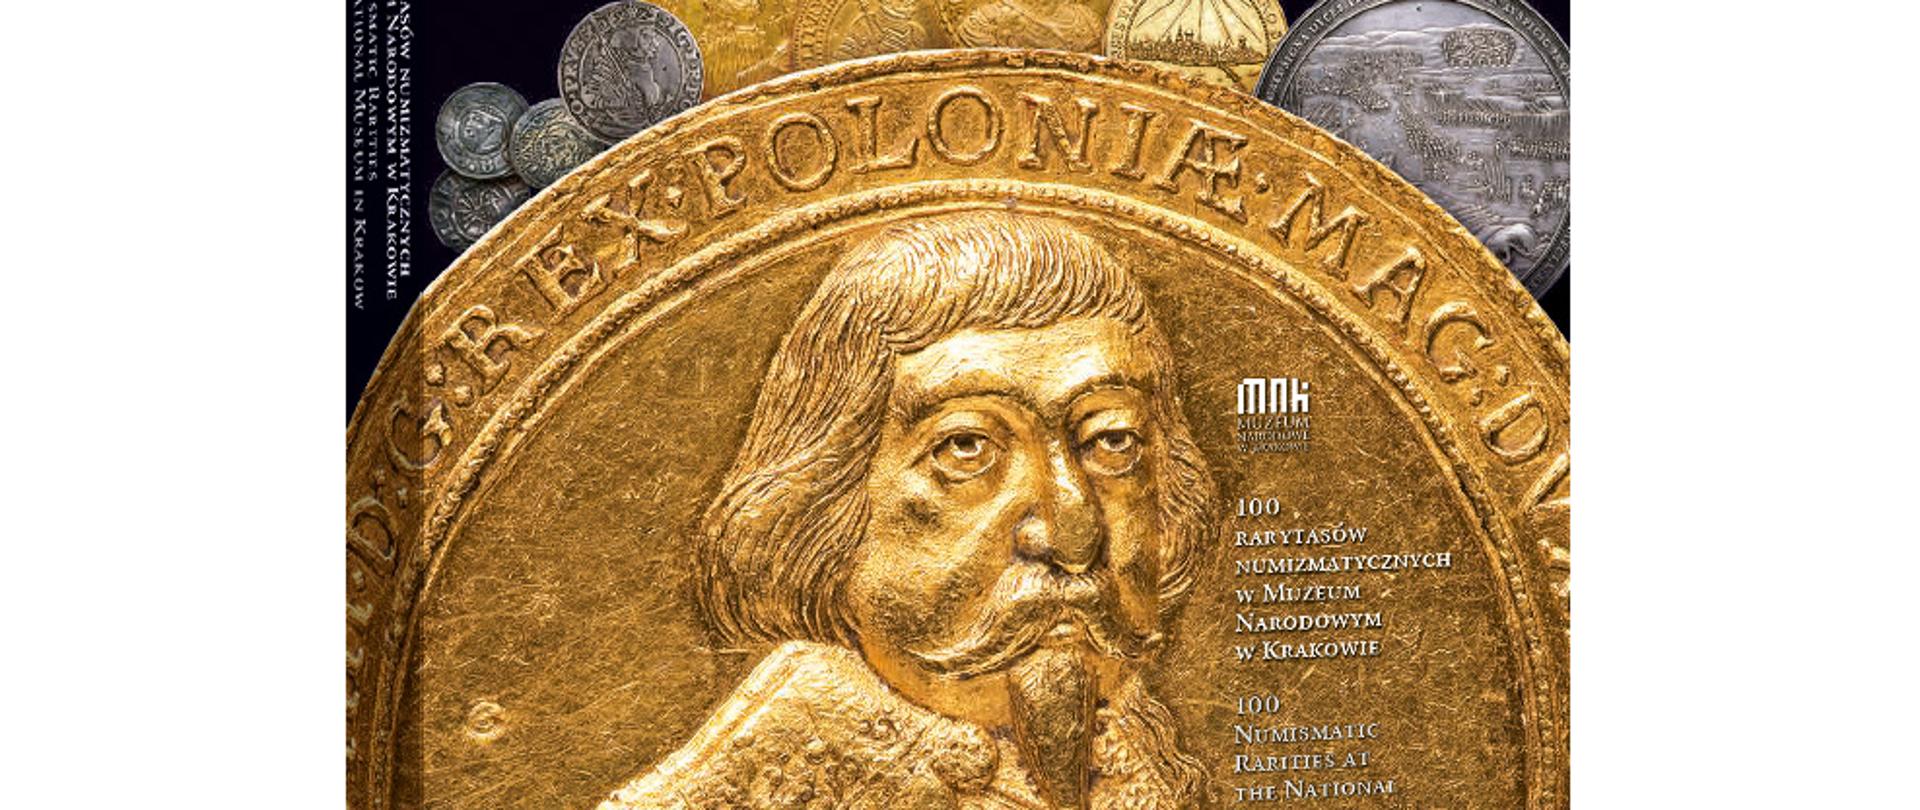 100 rarytasów numizmatycznych fot archiwum MNK